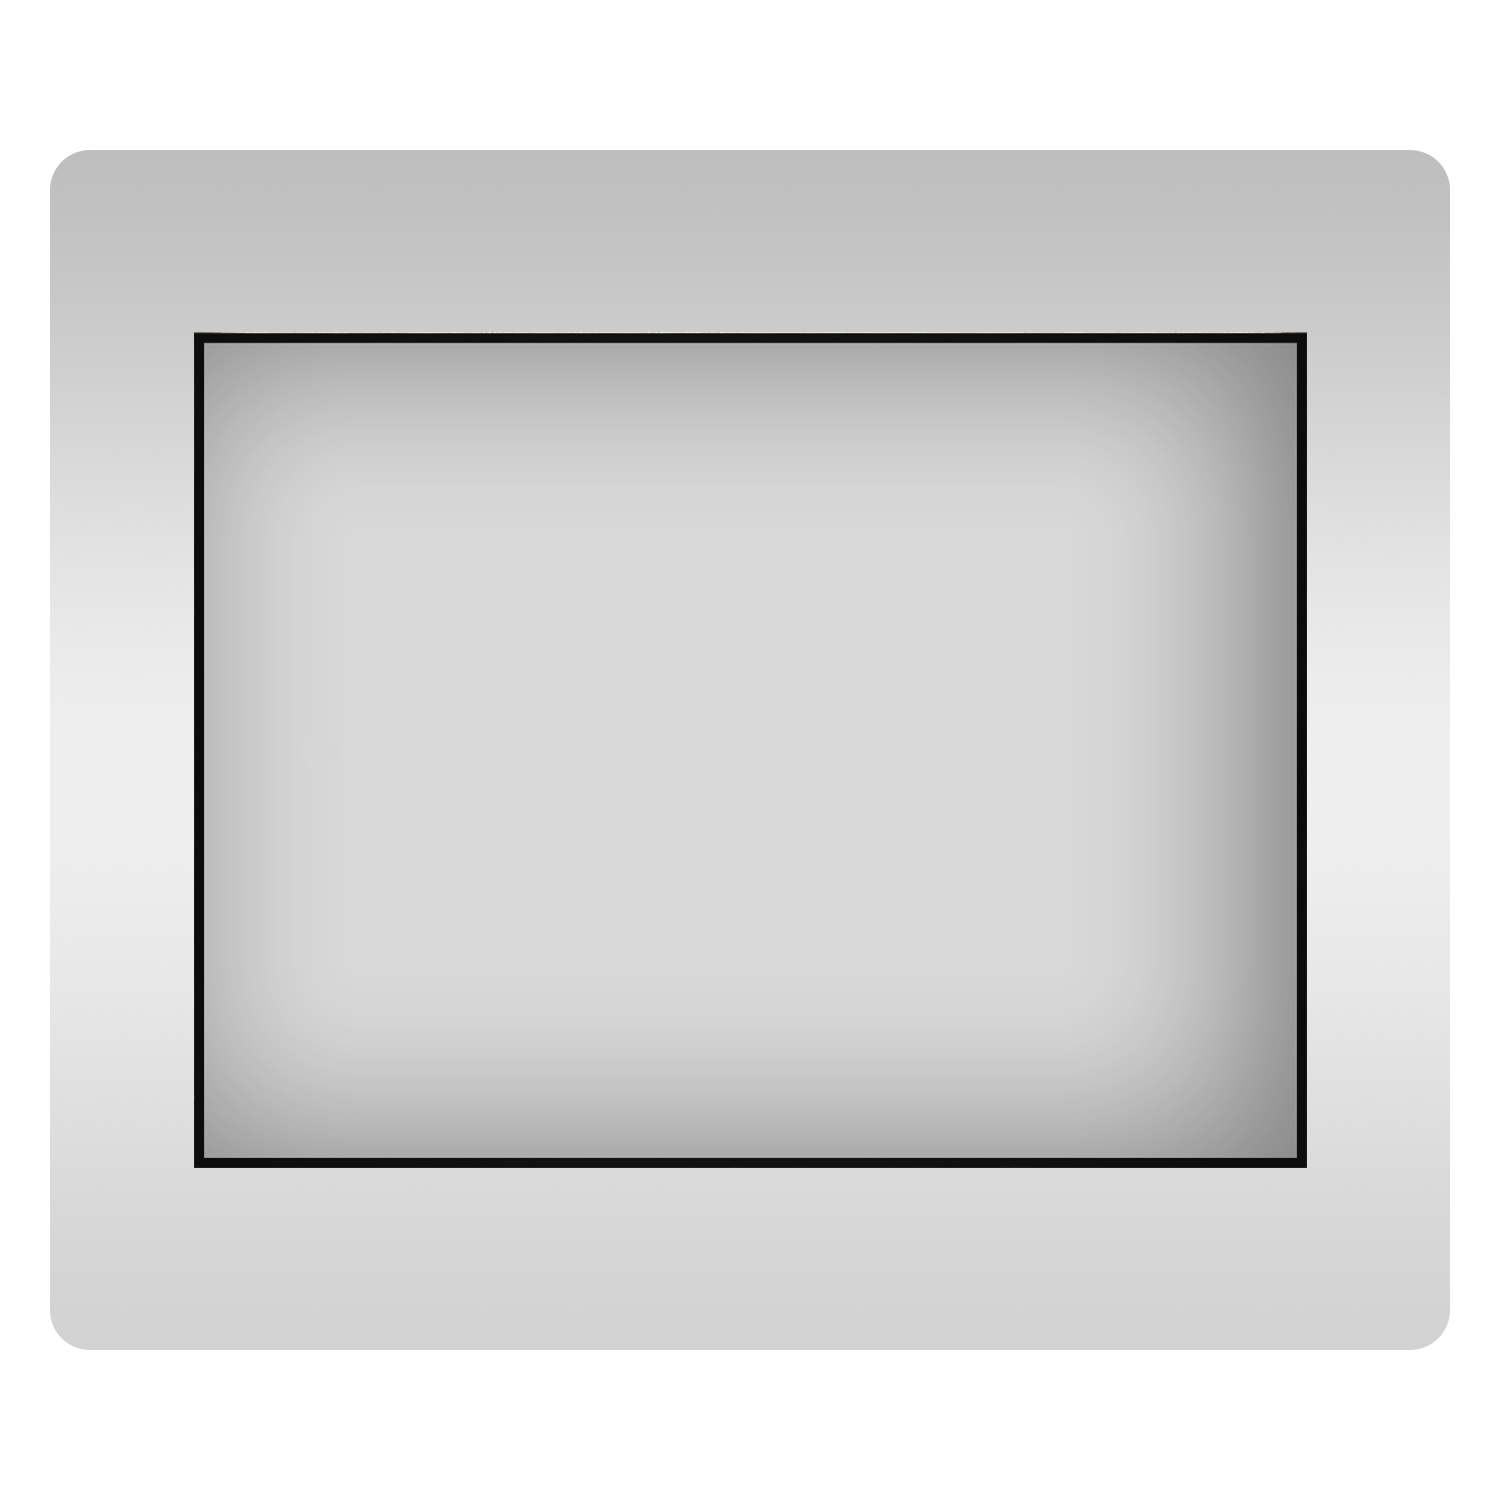 Влагостойкое прямоугольное зеркало Wellsee 7 Rays' Spectrum 172200590, 70х55 см